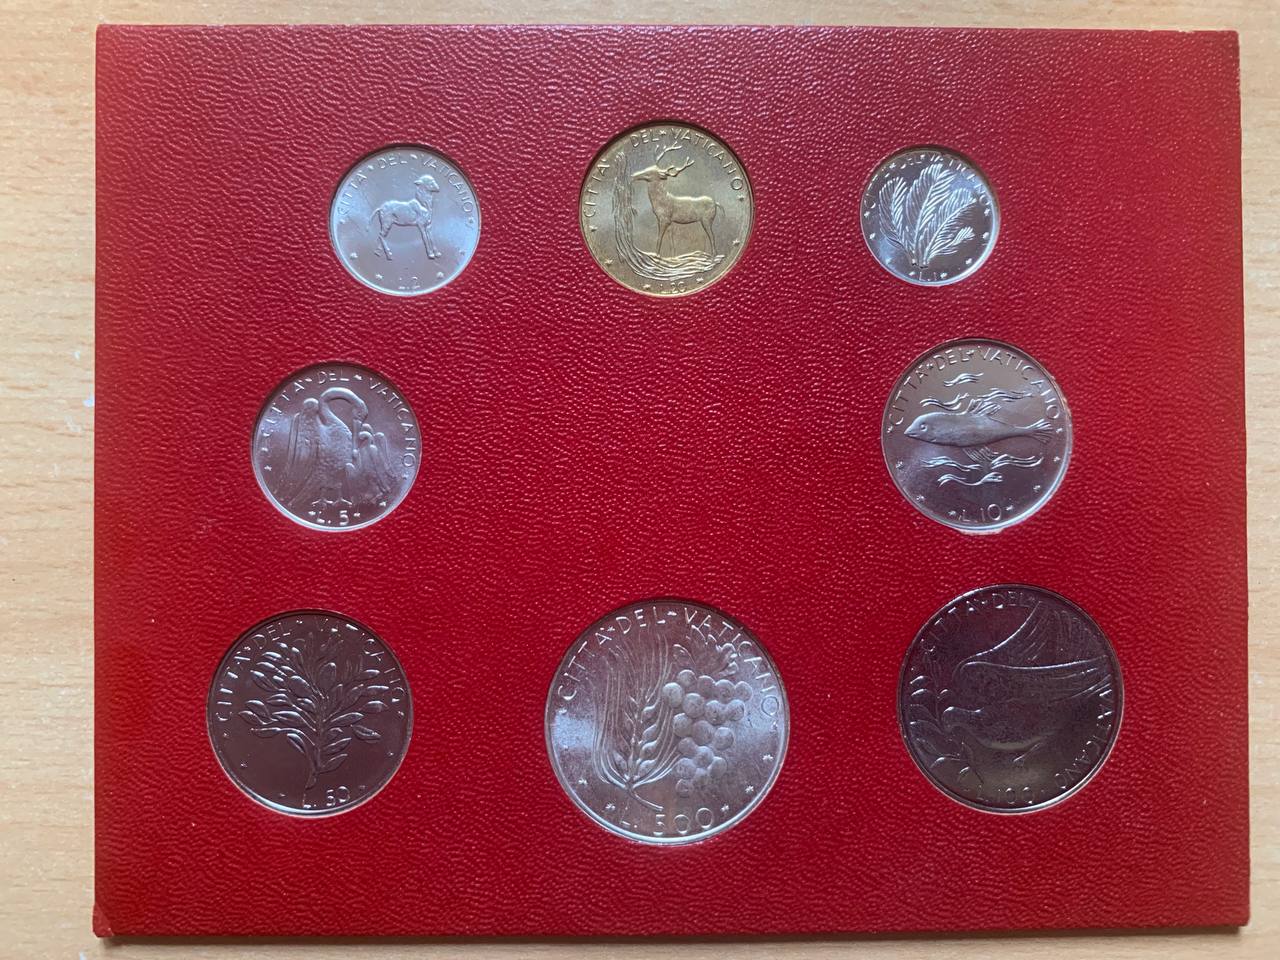  Jahresset von Vatikan 1973 BU (8 Münzen)   